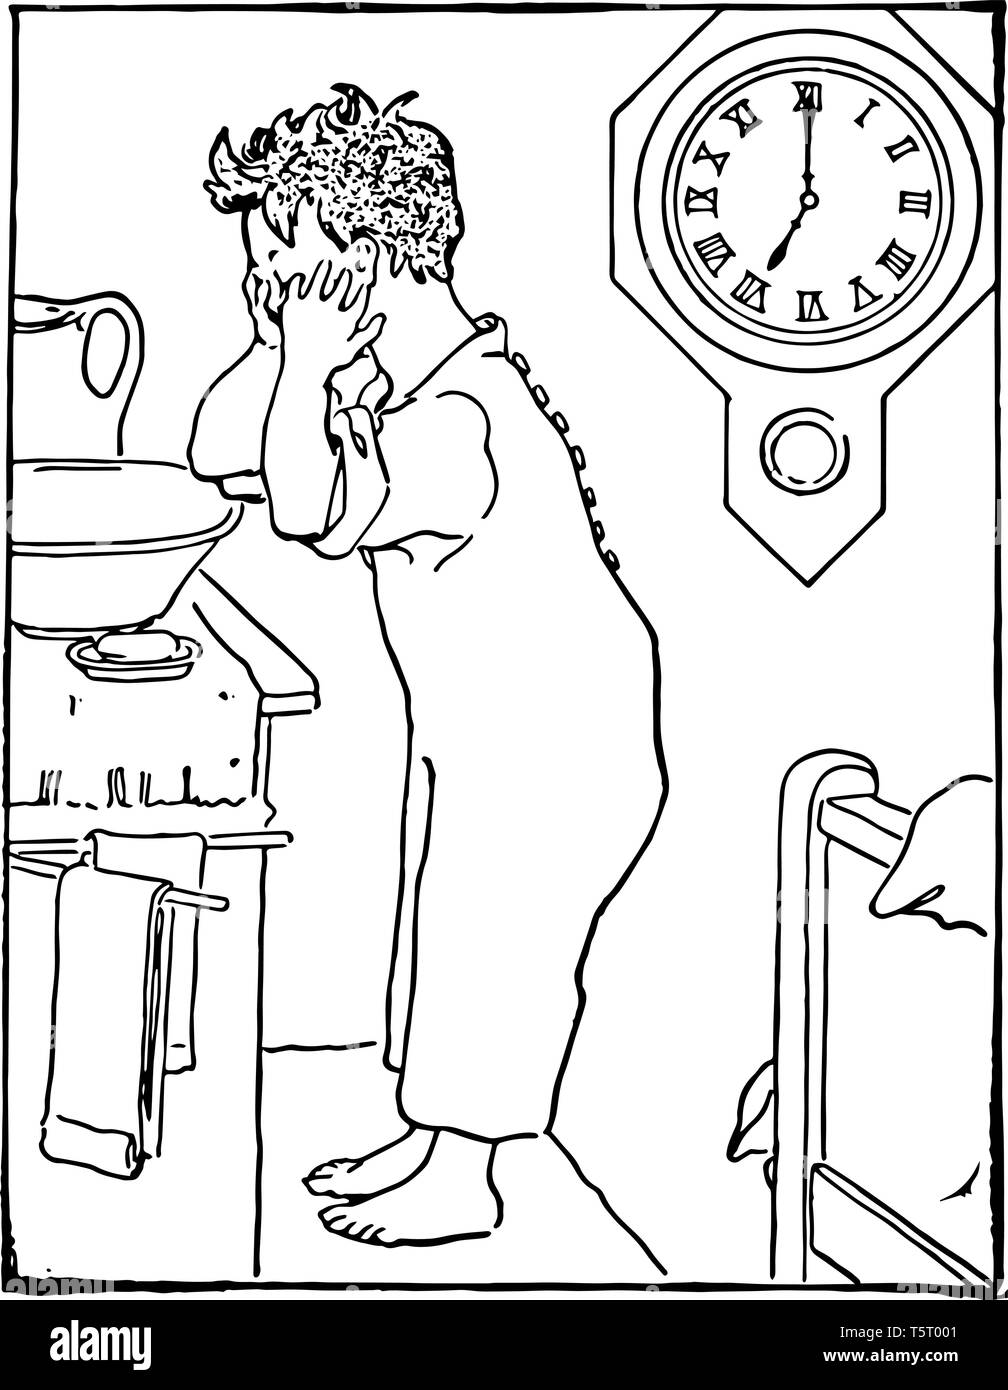 Un bambino è il lavaggio del suo volto nel bacino. Un orologio da parete dietro di lui che mostra tempo come 7:00, vintage disegno della linea di incisione o illustrazione. Illustrazione Vettoriale